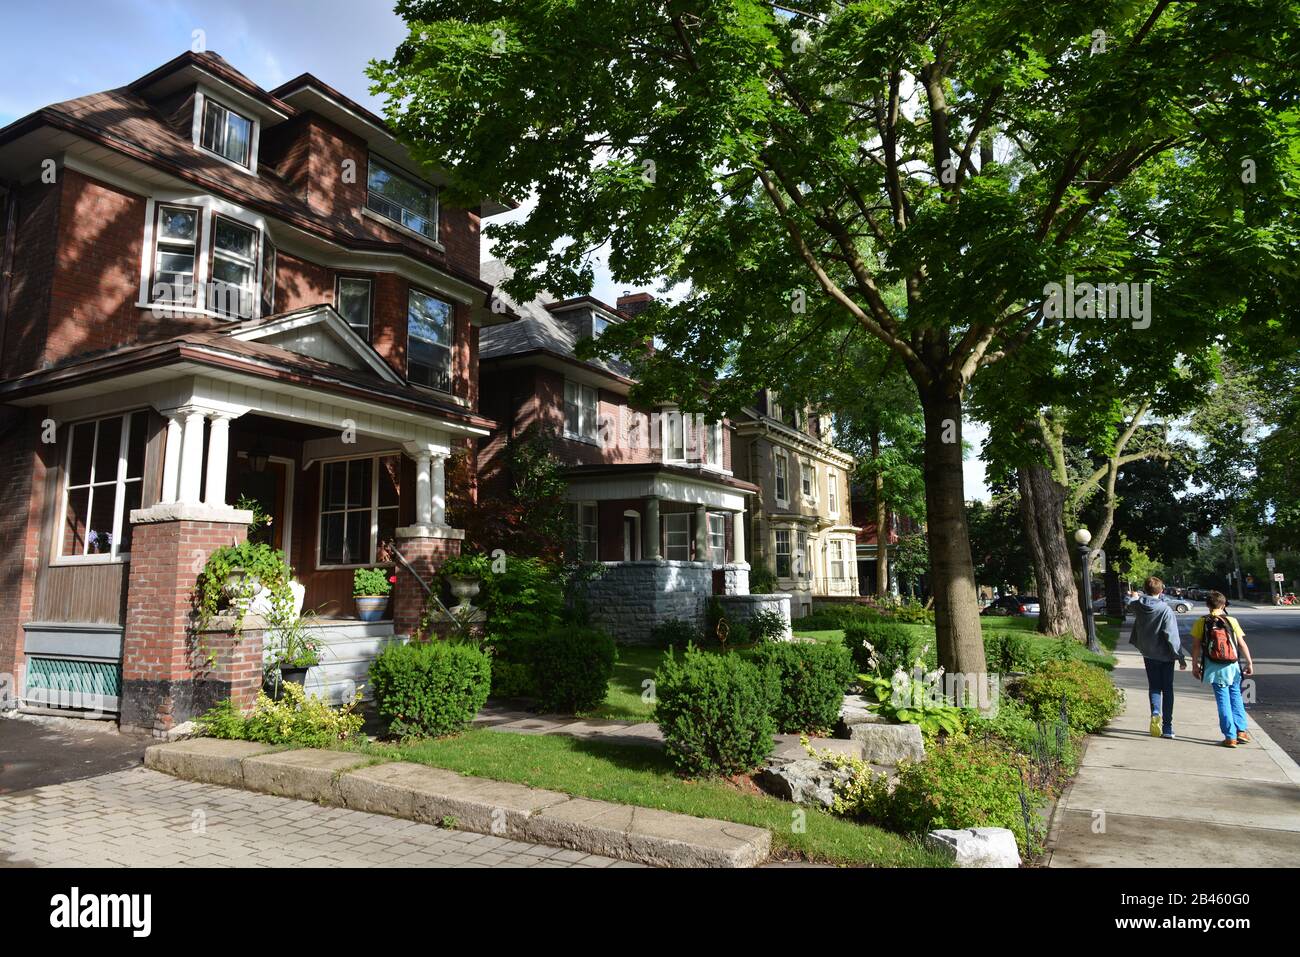 Wohnhaeuser, Little Italy, Toronto, Ontario, Kanada / Wohnhäuser Stock Photo